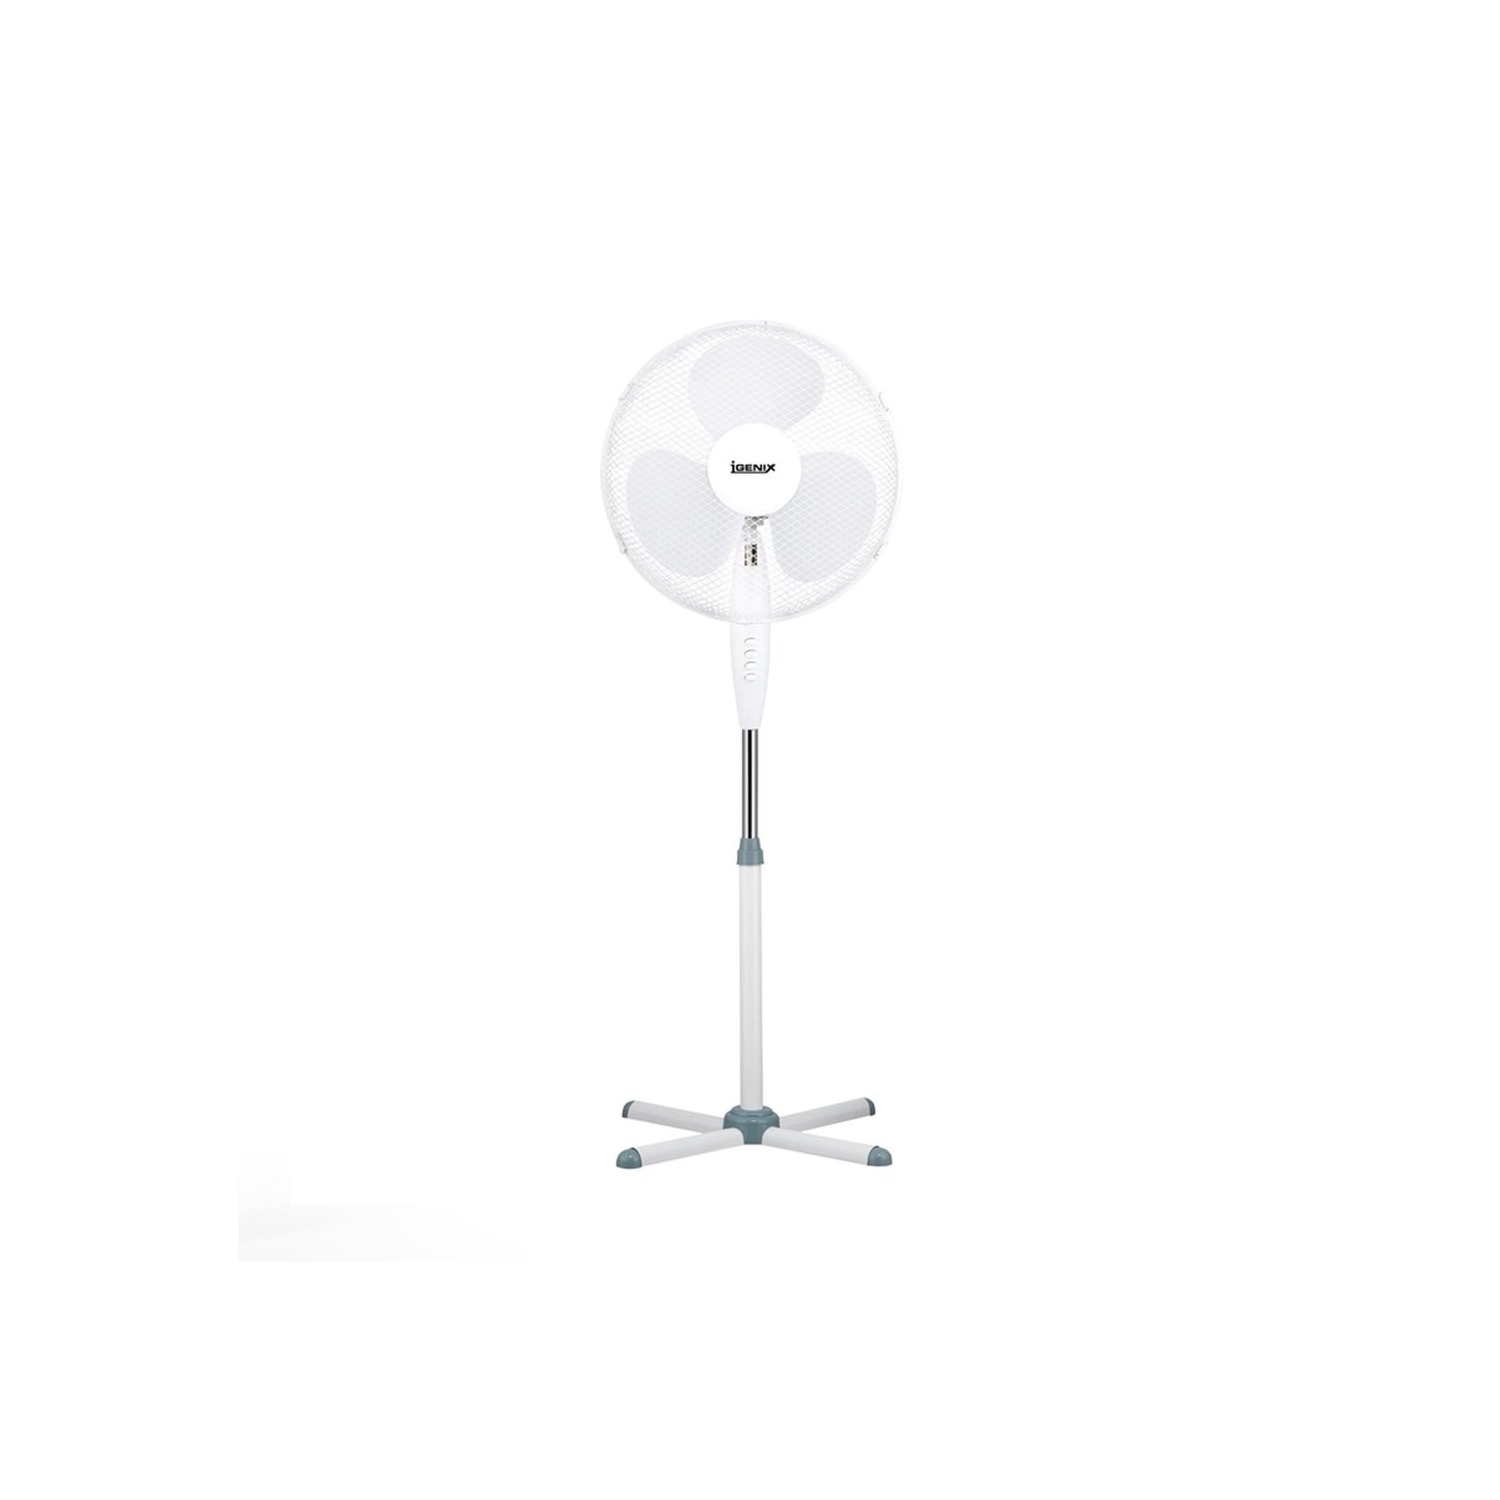 Igenix 16" Pedestal Fan (white) - 0